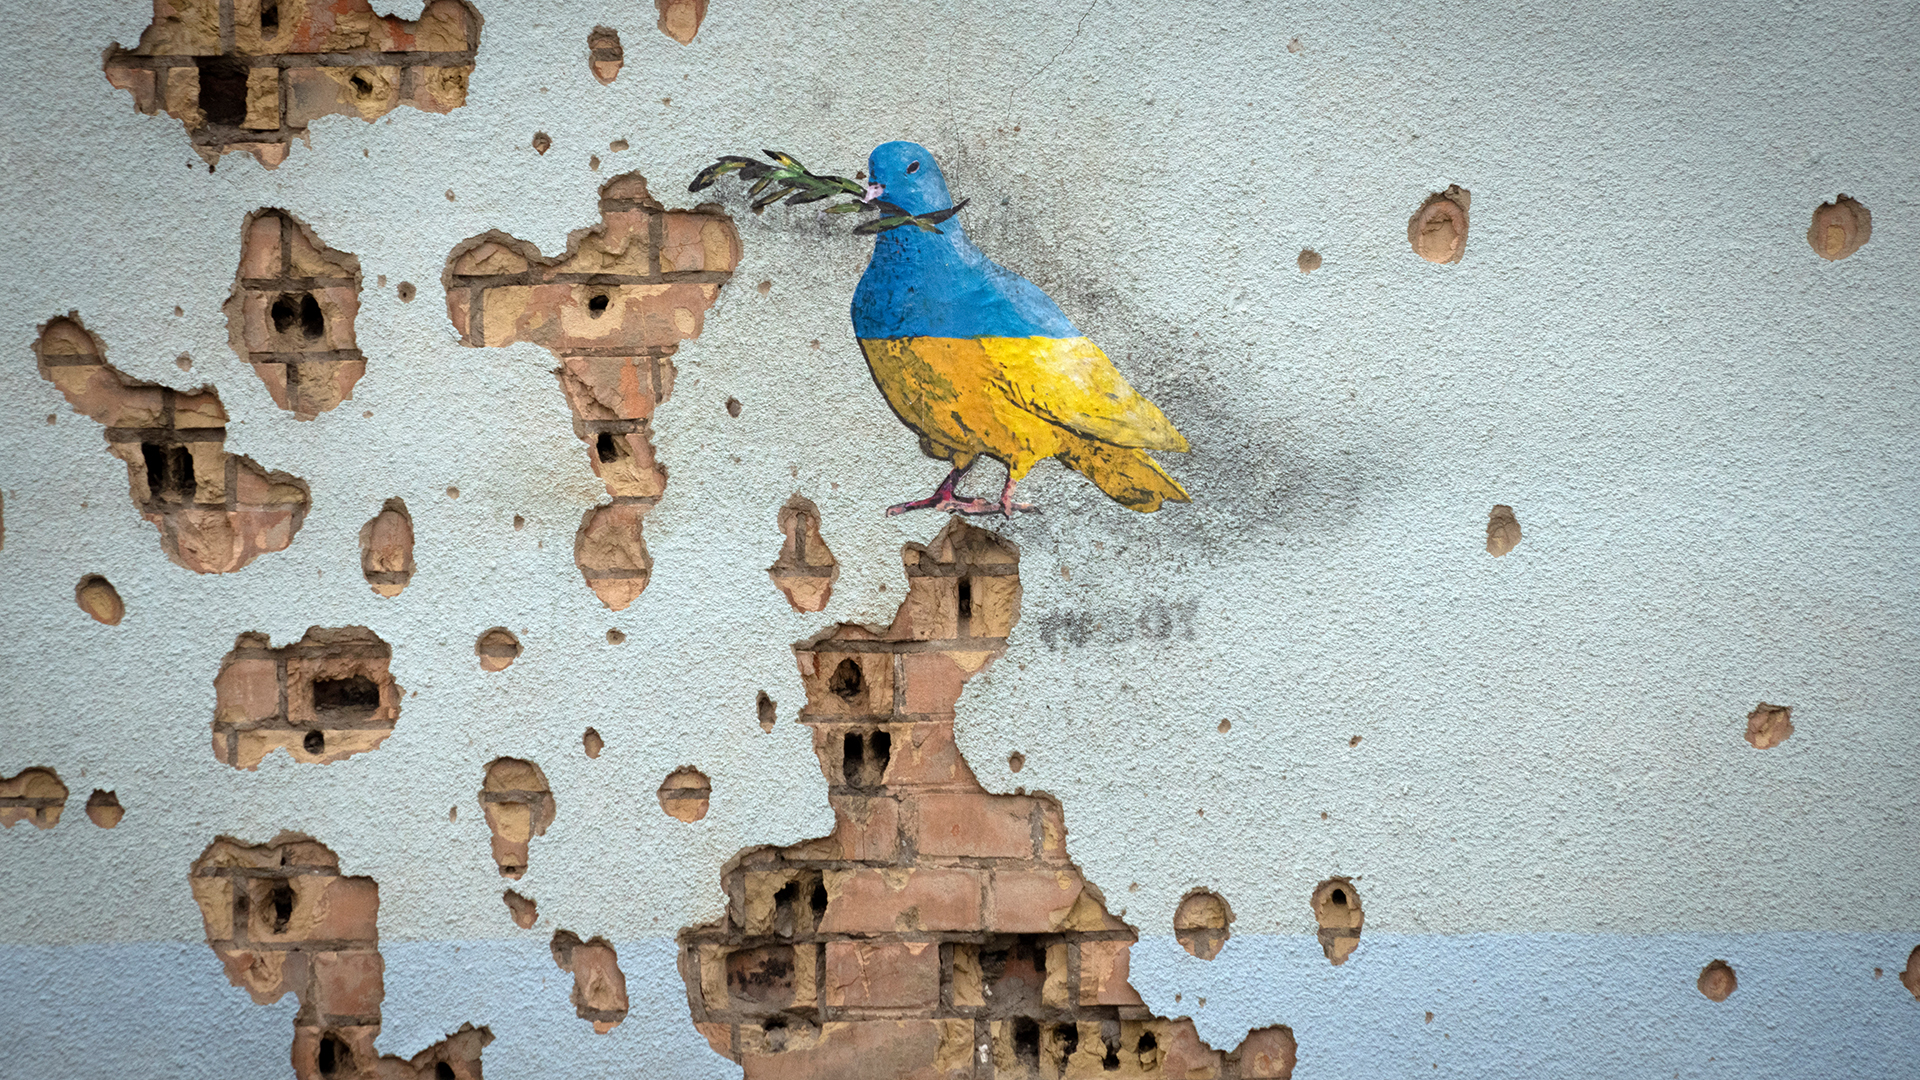 Eine Taube des Straßenkünstlers TvBoy an der Wand des Kulturhauses in der ukrainischen Stadt Irpin, das während eines Angriffs schwer beschädigt wurde. | picture alliance/dpa/AP